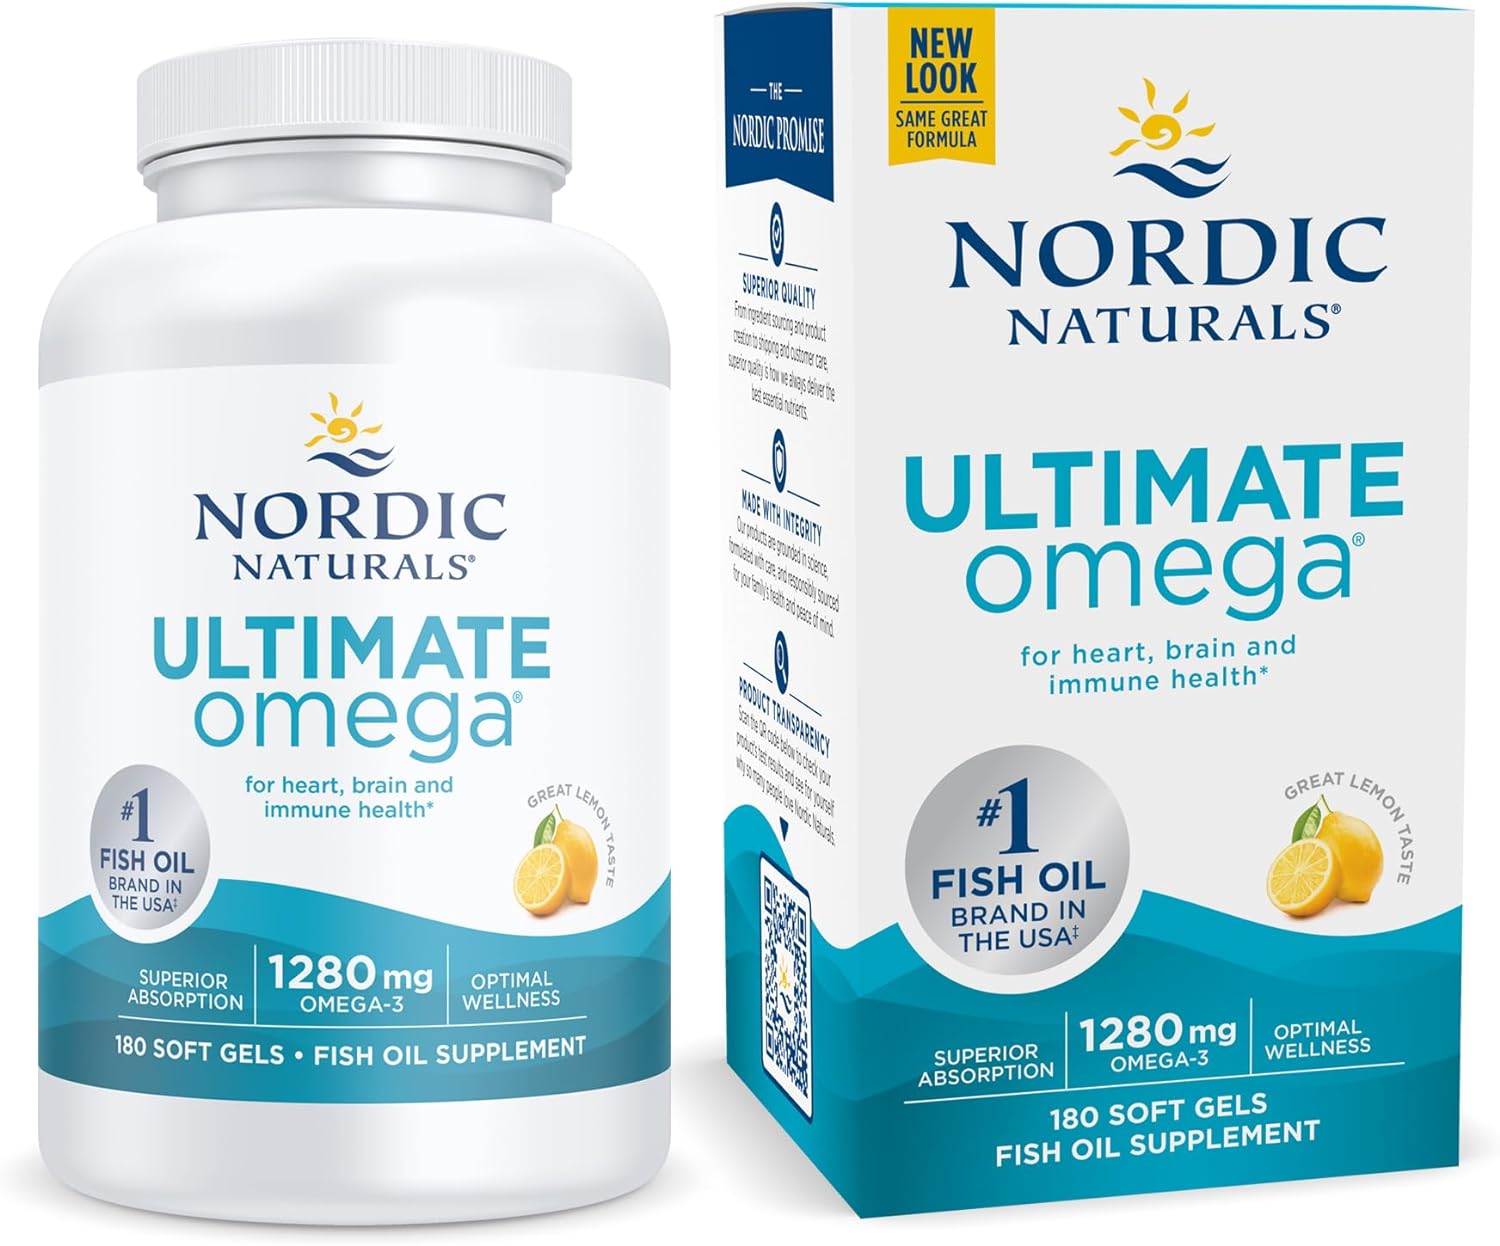 Nordic Naturals Ultimate Omega, Lemon Flavor - 180 Soft Gels - 1280 mg Omega-3 - High-Potency Omega-